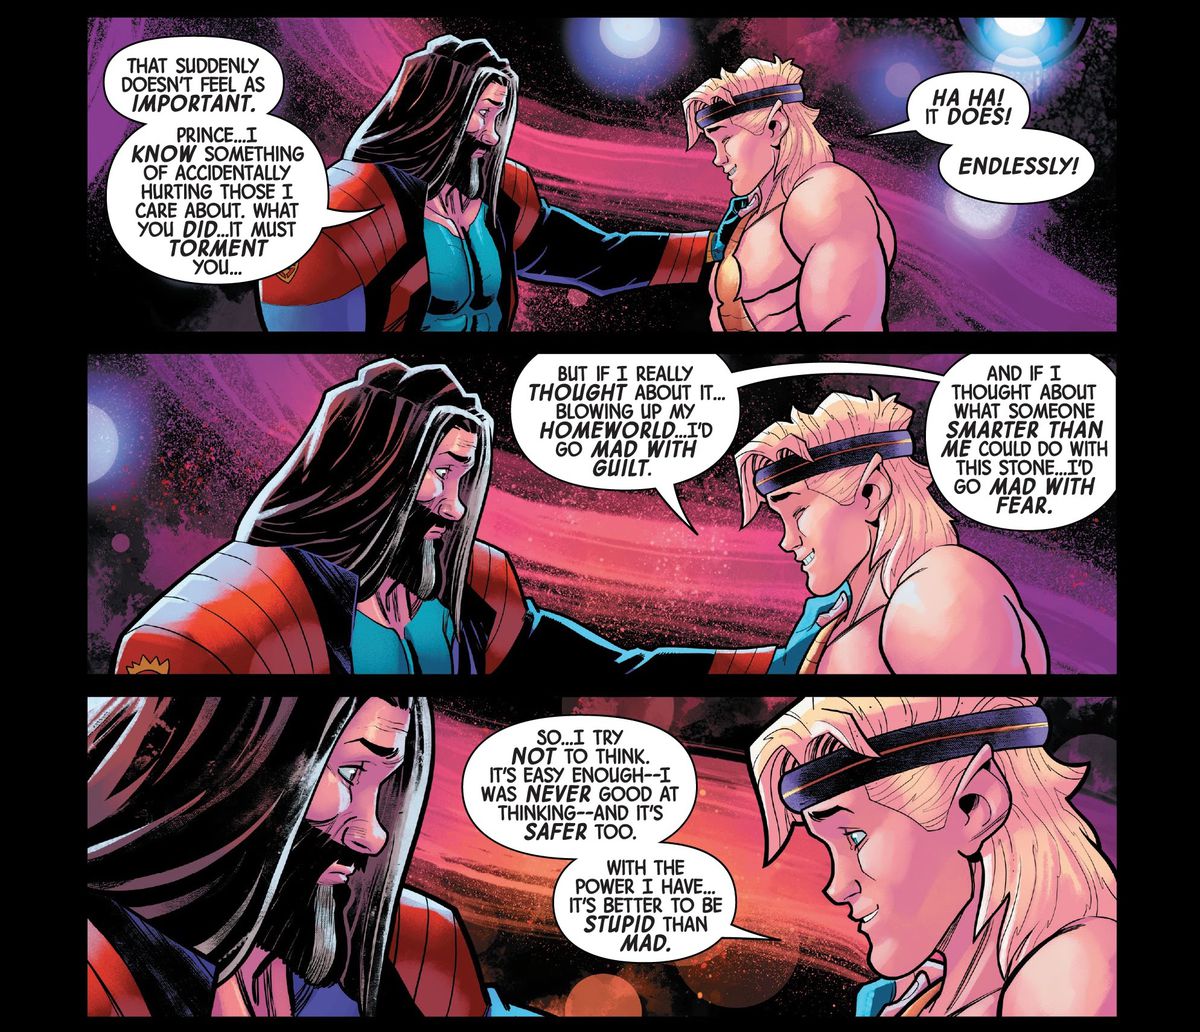 Il Principe del Potere spiega a Ercole che con il modo in cui funziona la sua Gemma dell'Infinito, la sua forza aumenta con la sua intelligenza - ed è meglio se rimane stupido.  “Se pensassi a cosa potrebbe fare qualcuno più intelligente di me con questa pietra impazzirei di paura.  Quindi... cerco di non pensare [...] con il potere che ho, è meglio essere stupidi che pazzi”, in Guardians of the Galaxy Annual #1 (2021). 